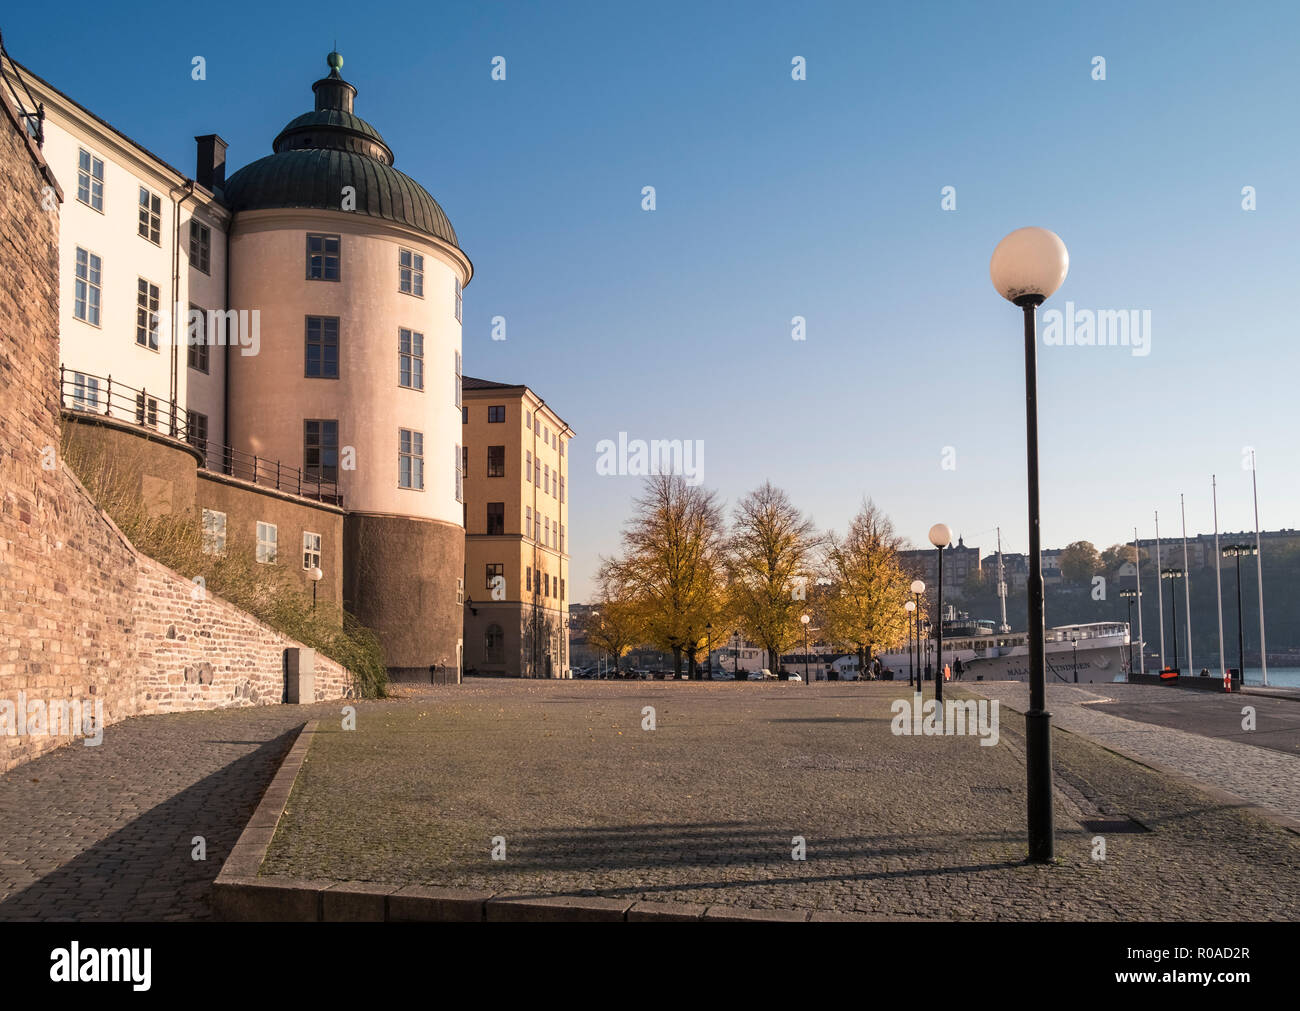 Straßenszene in Riddarholmen Gamla Stan, Stockholm, Schweden, mit Wrangel Palace (Wrangelska Palatset), regionale Berufungsgericht Links dargestellt. Stockfoto